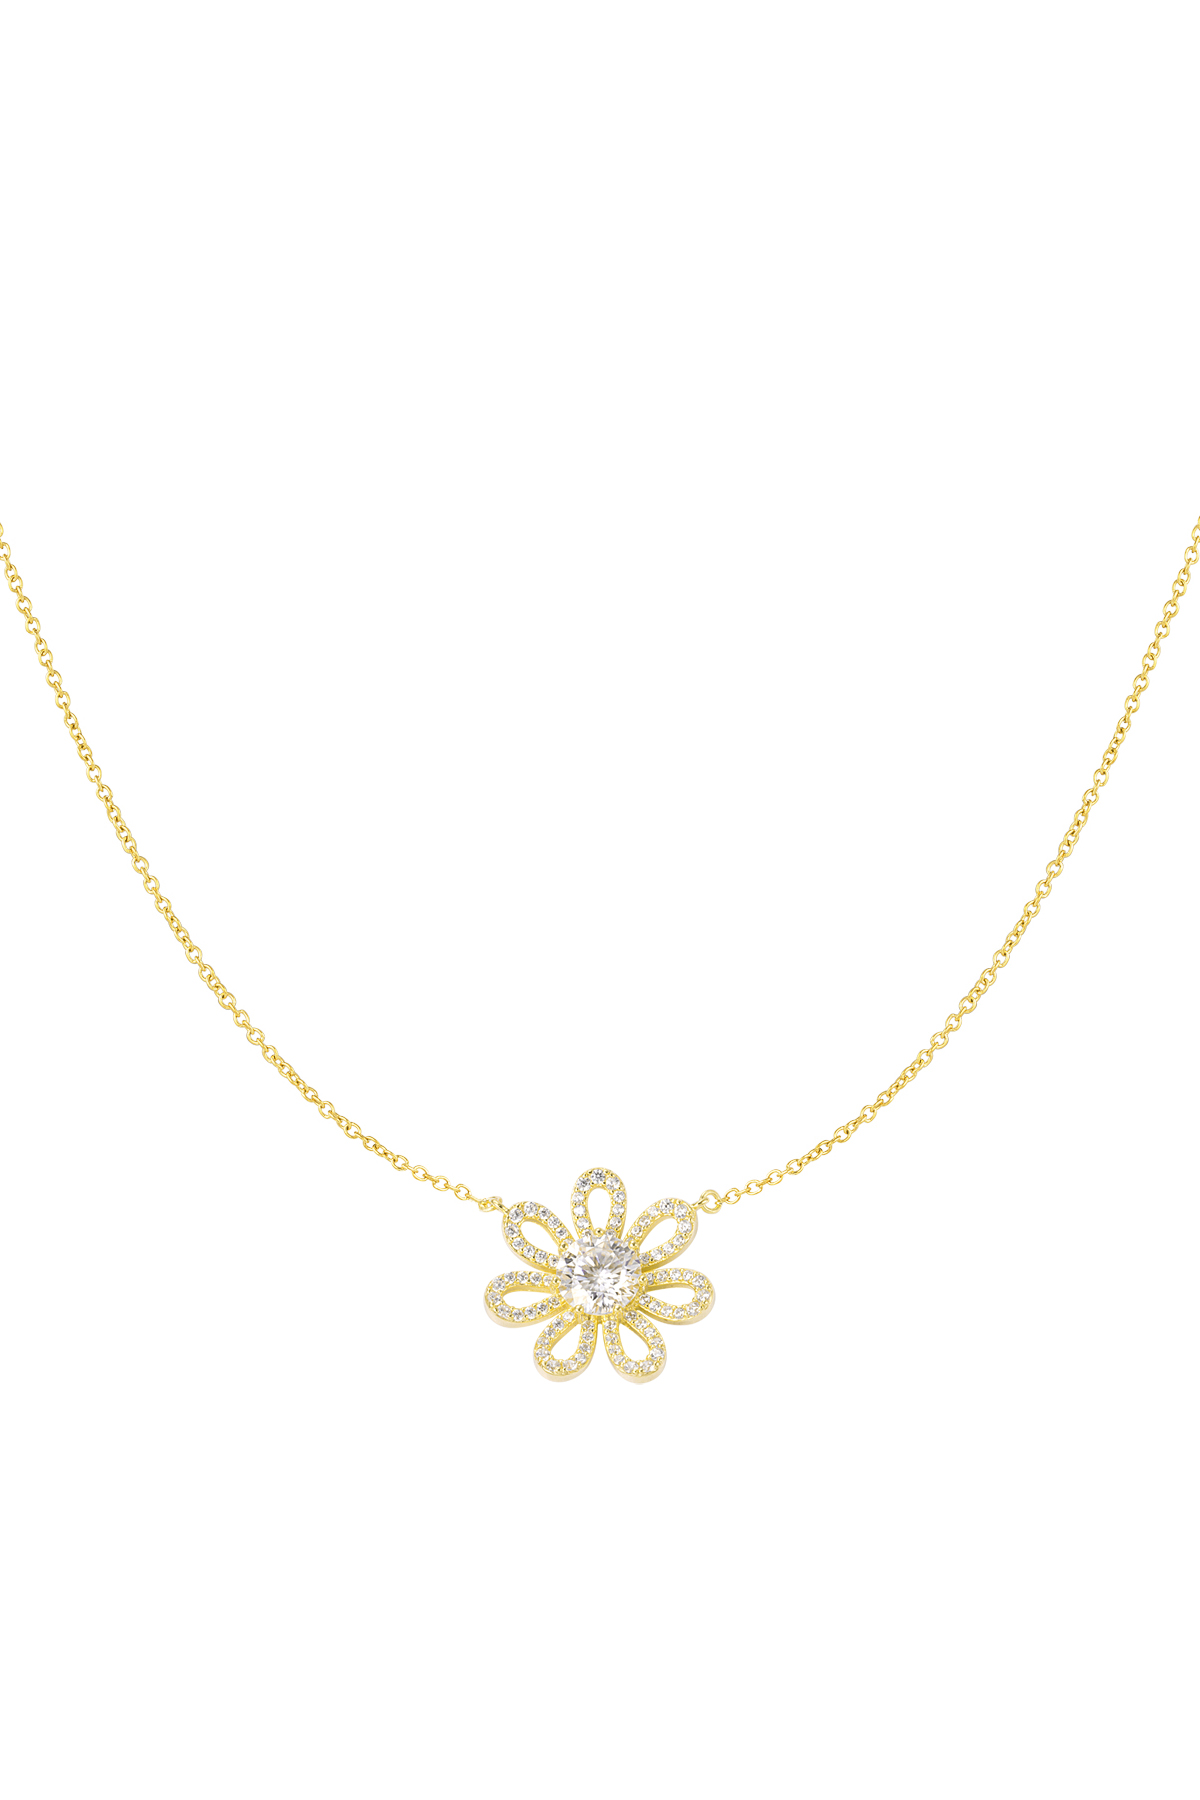 Necklace rhinestones flower - gold h5 